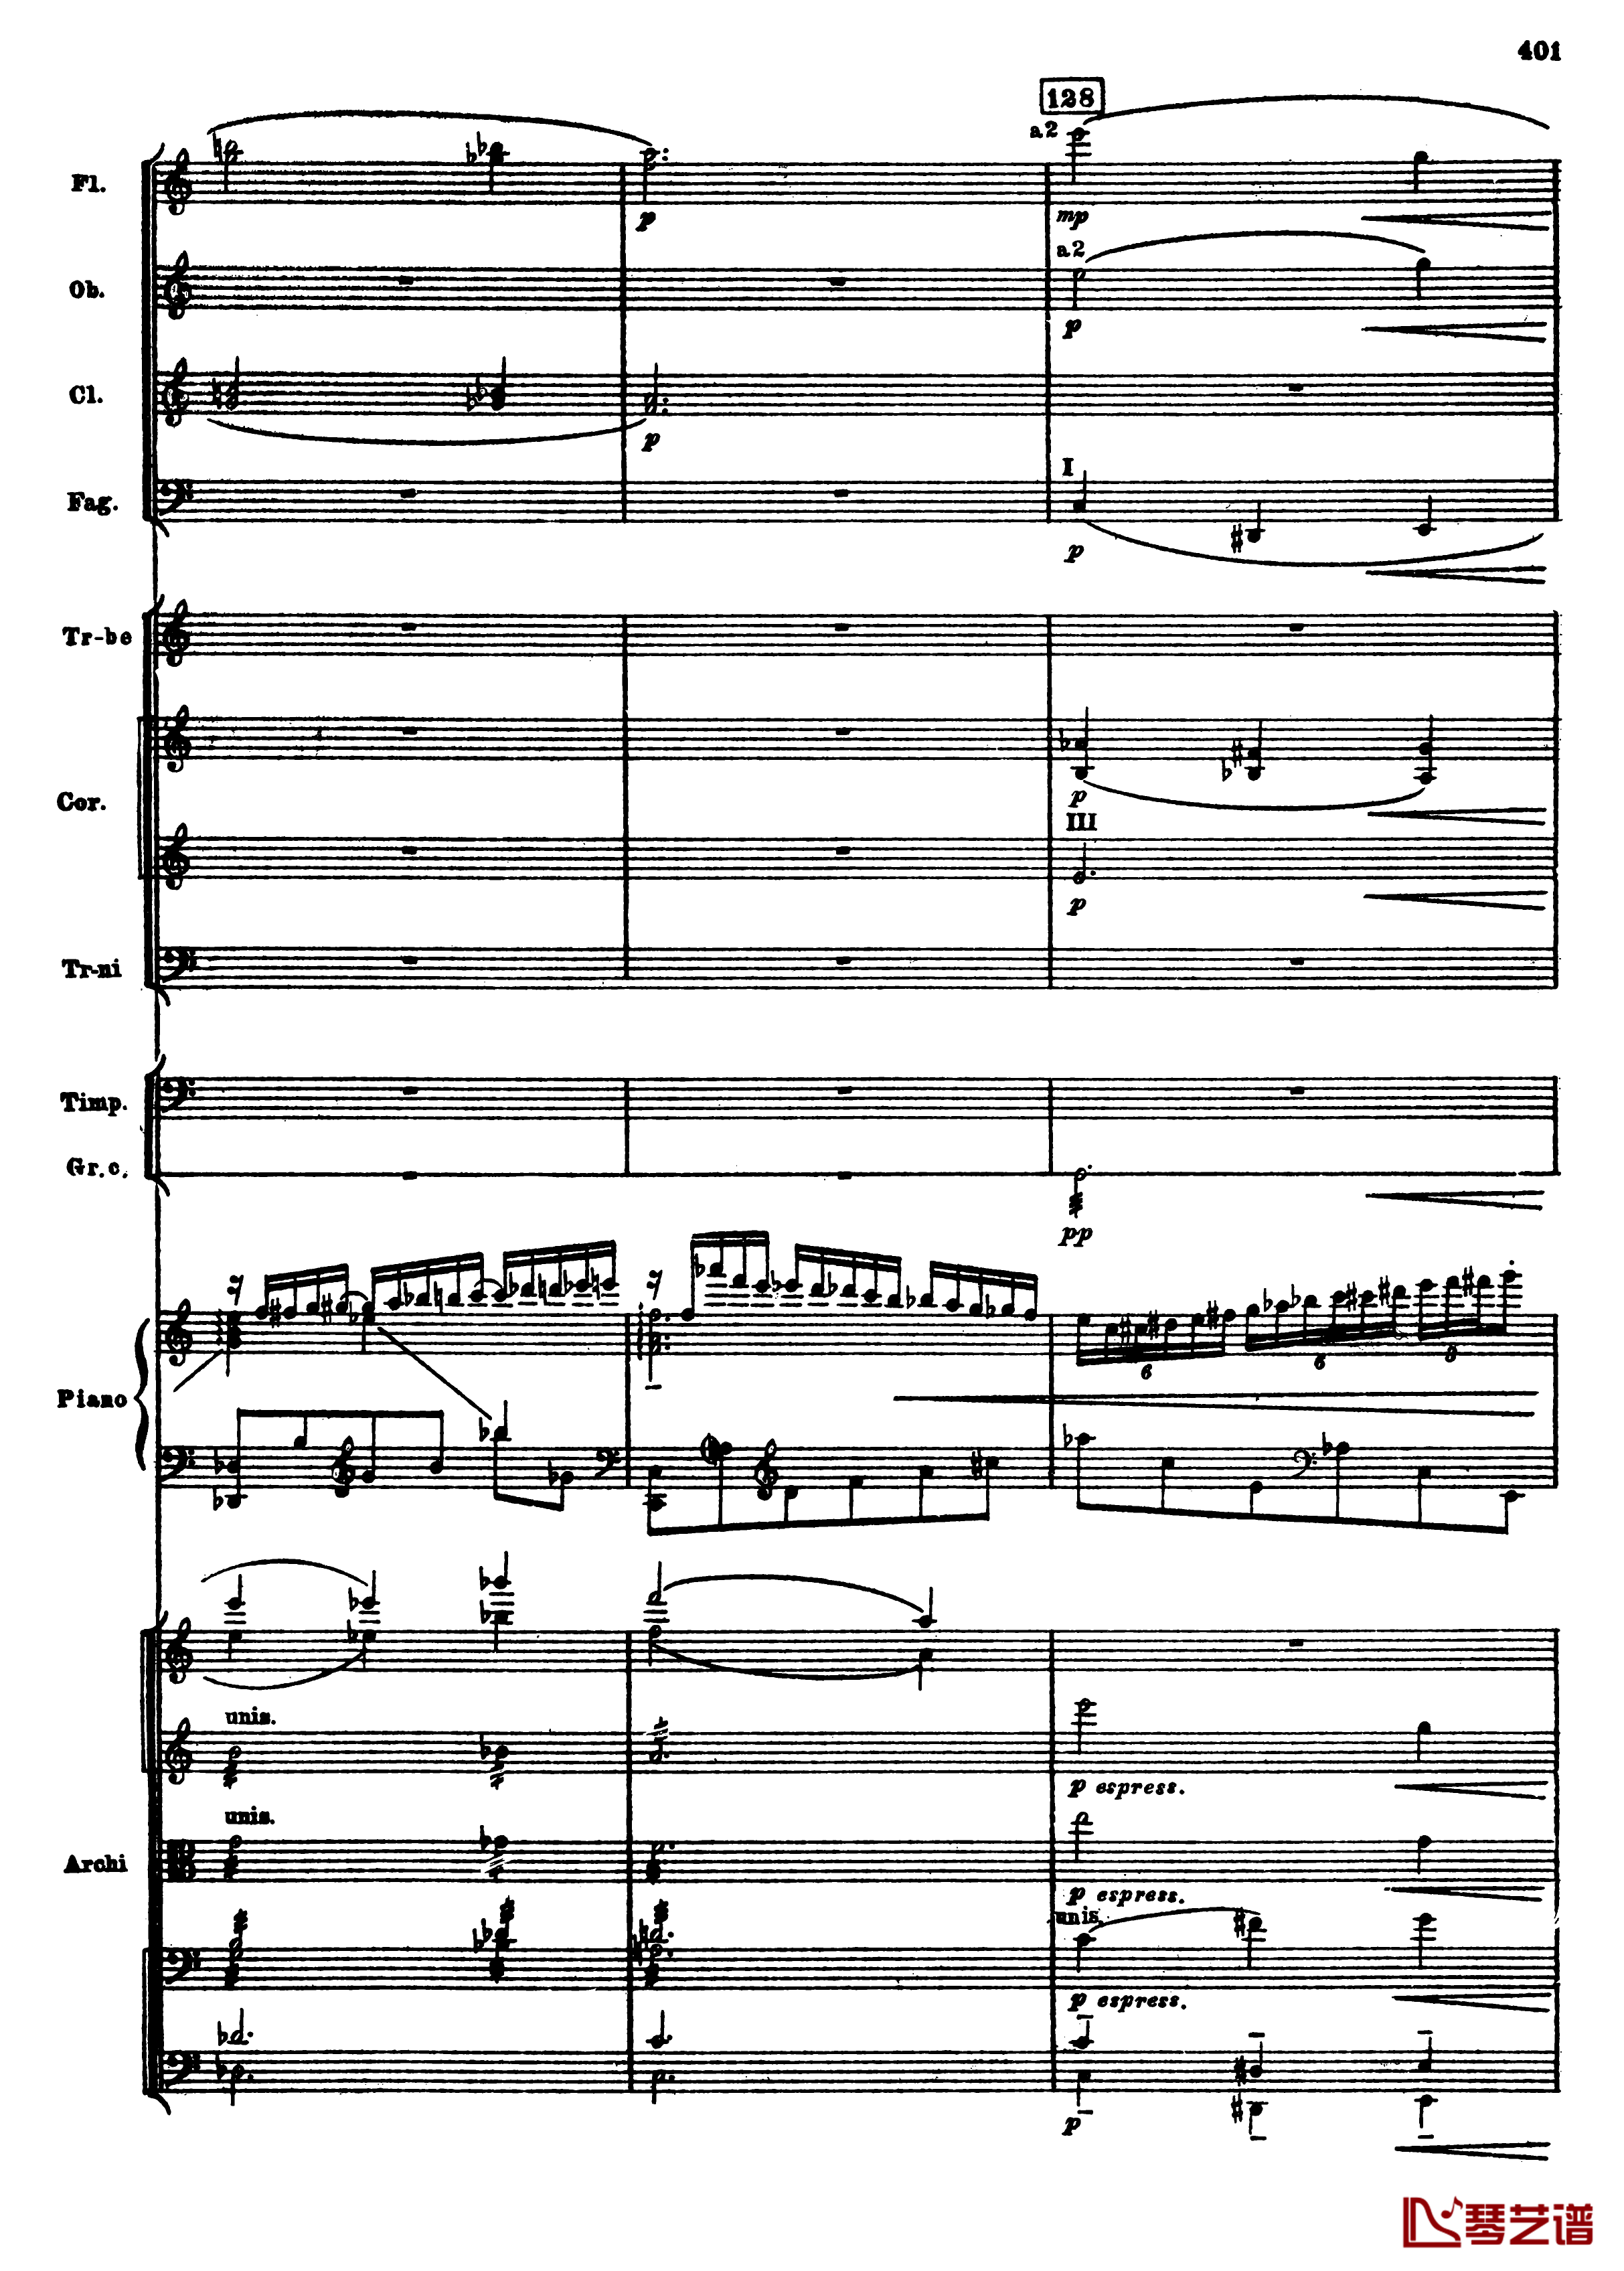 普罗科菲耶夫第三钢琴协奏曲钢琴谱-总谱-普罗科非耶夫133